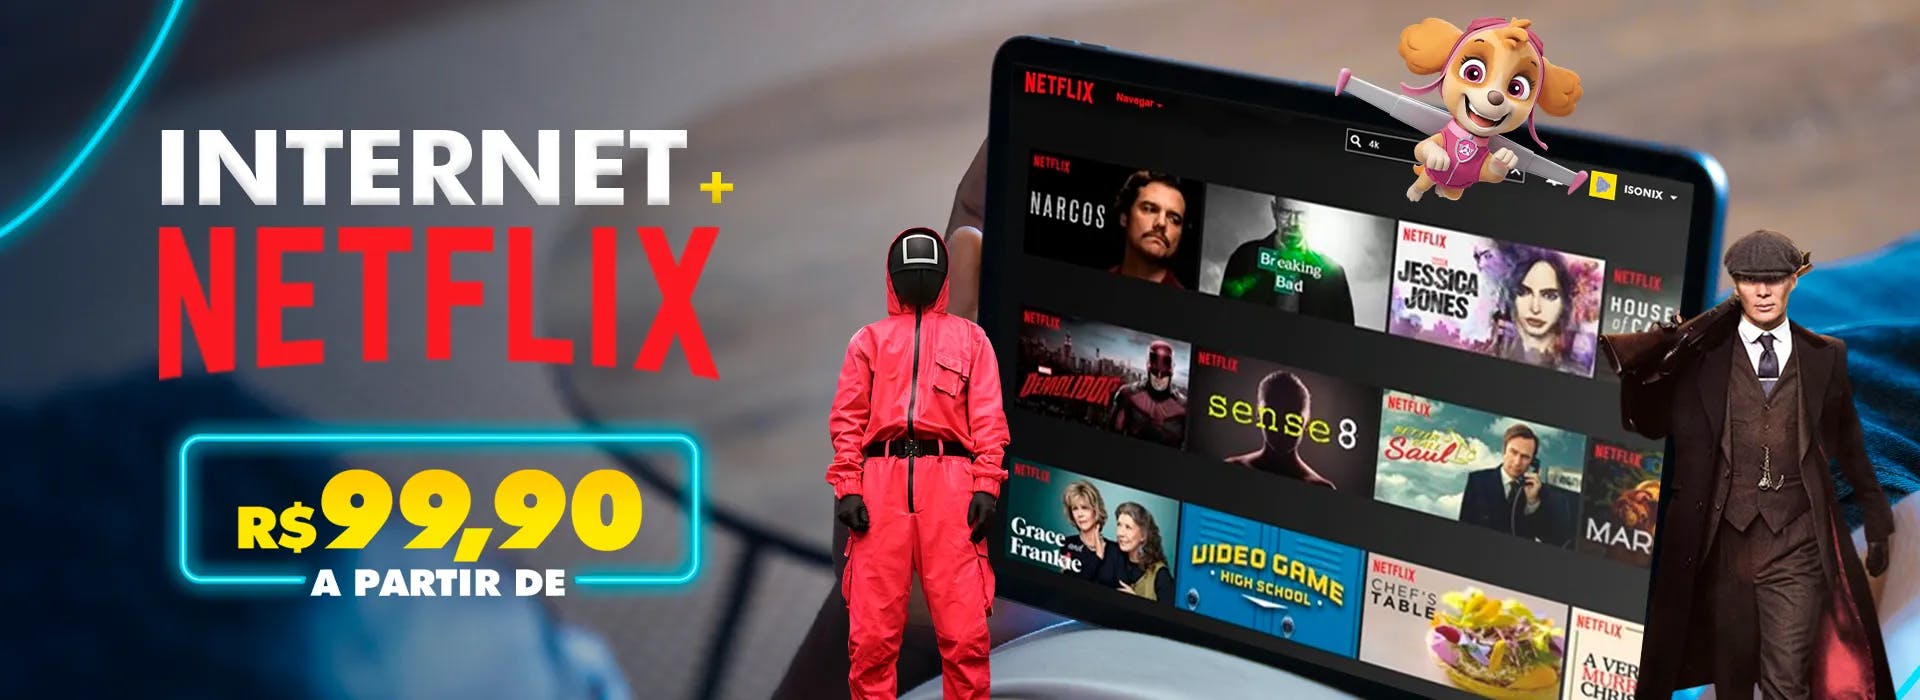 Veja qual a velocidade ideal de internet para Netflix